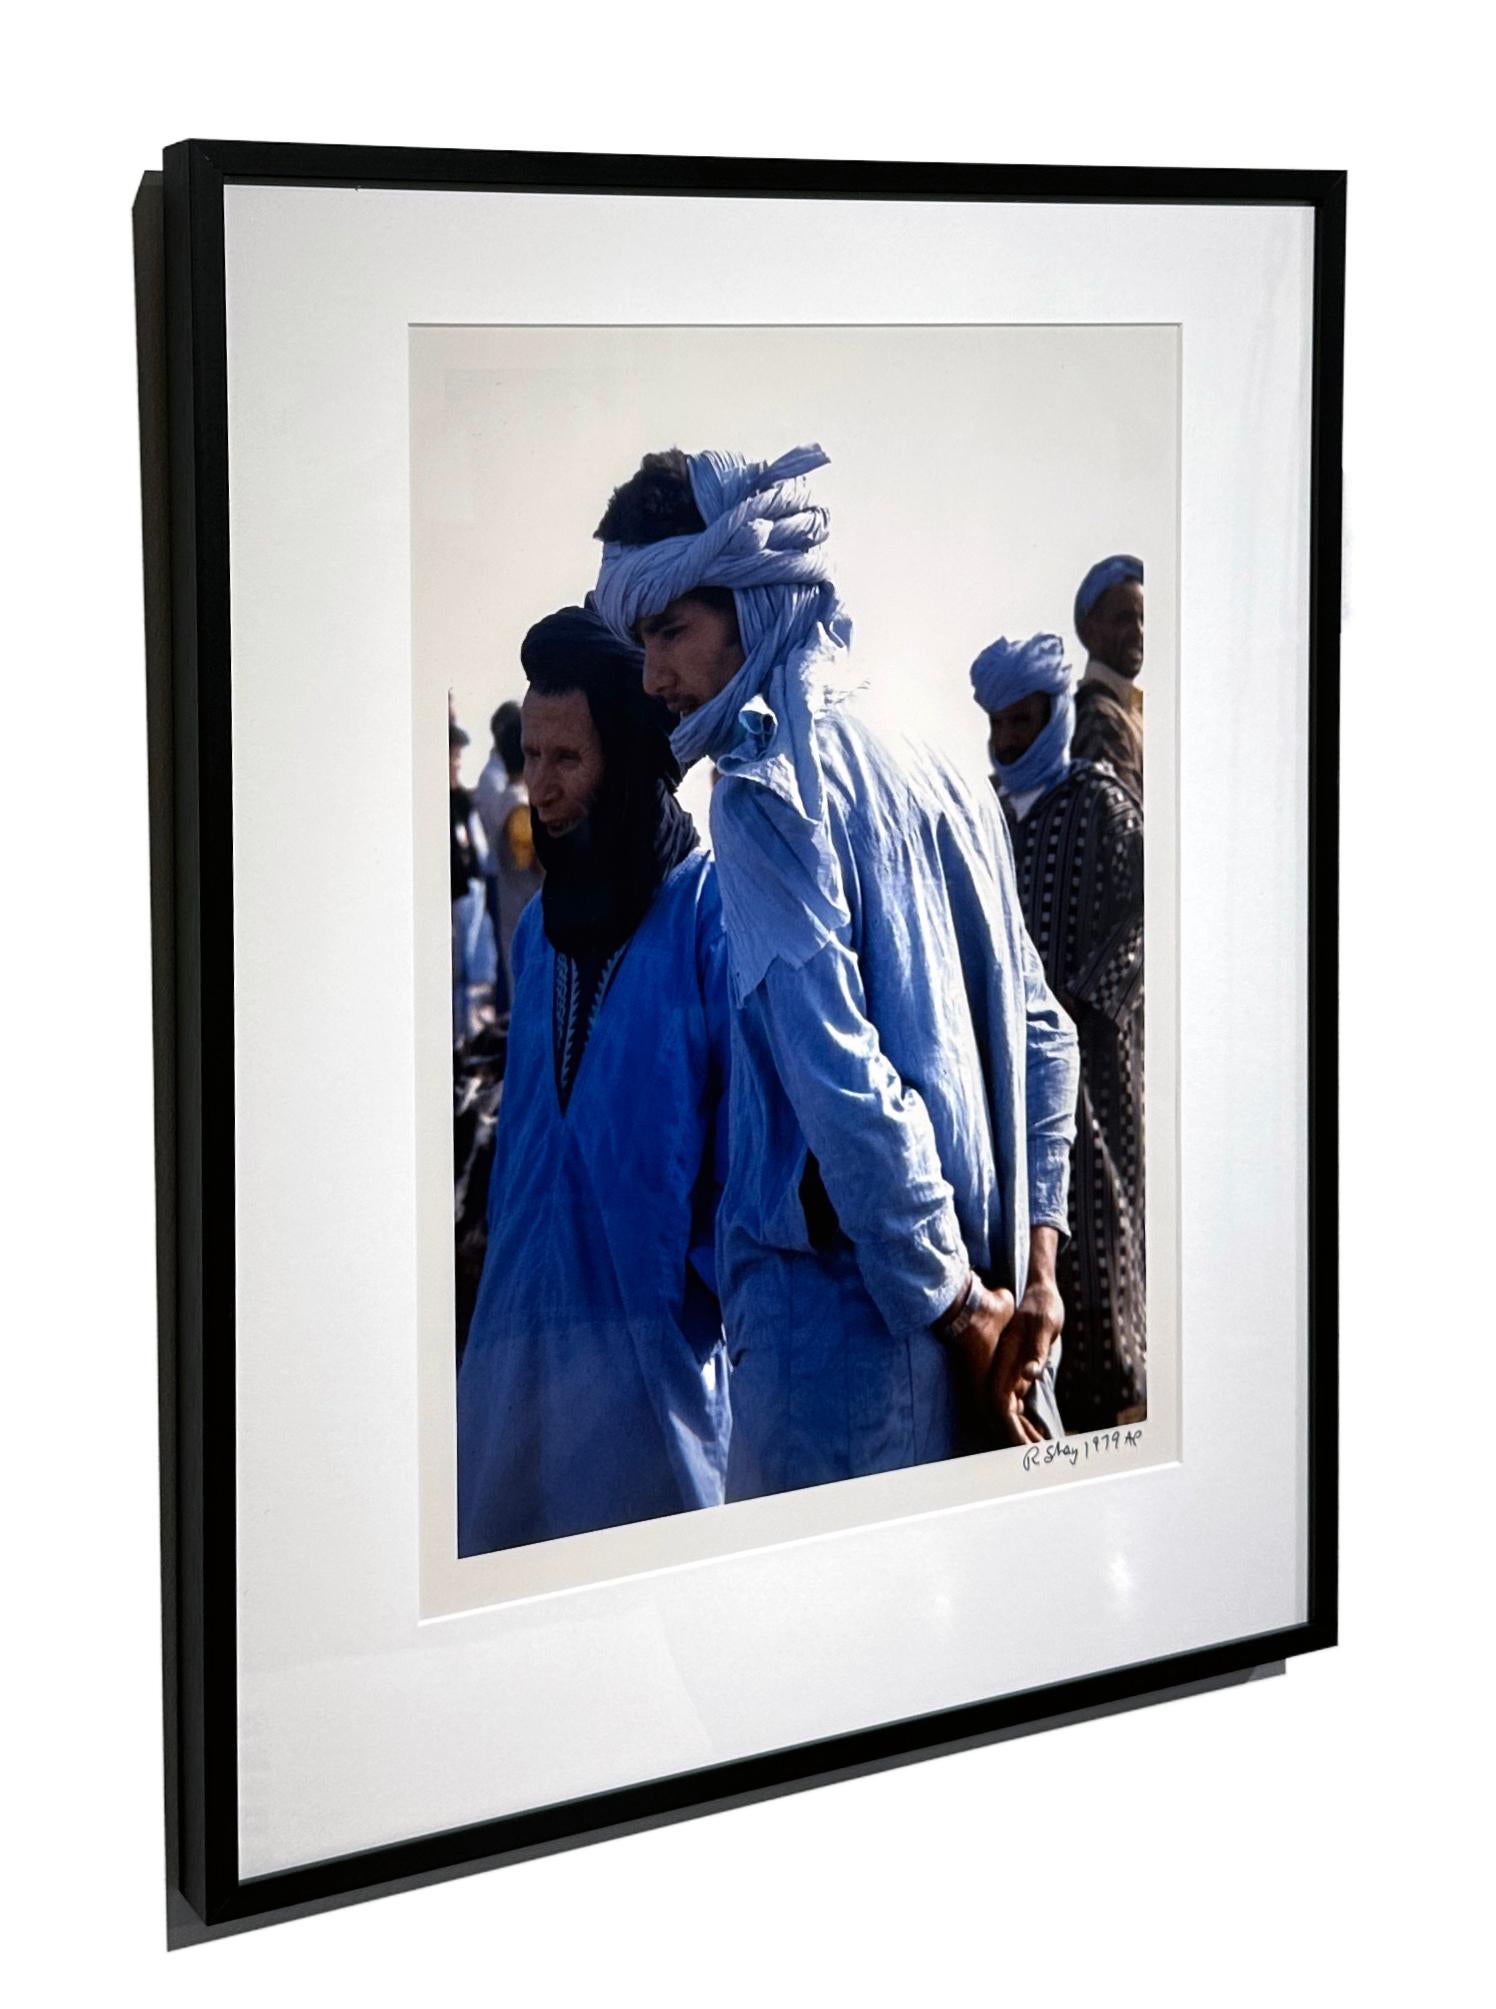 Indigofarbene Herren in Guelmim, Marokko-Markt, 1979  - Farbfotografie, mattiert und gerahmt (Zeitgenössisch), Photograph, von Richard Shay